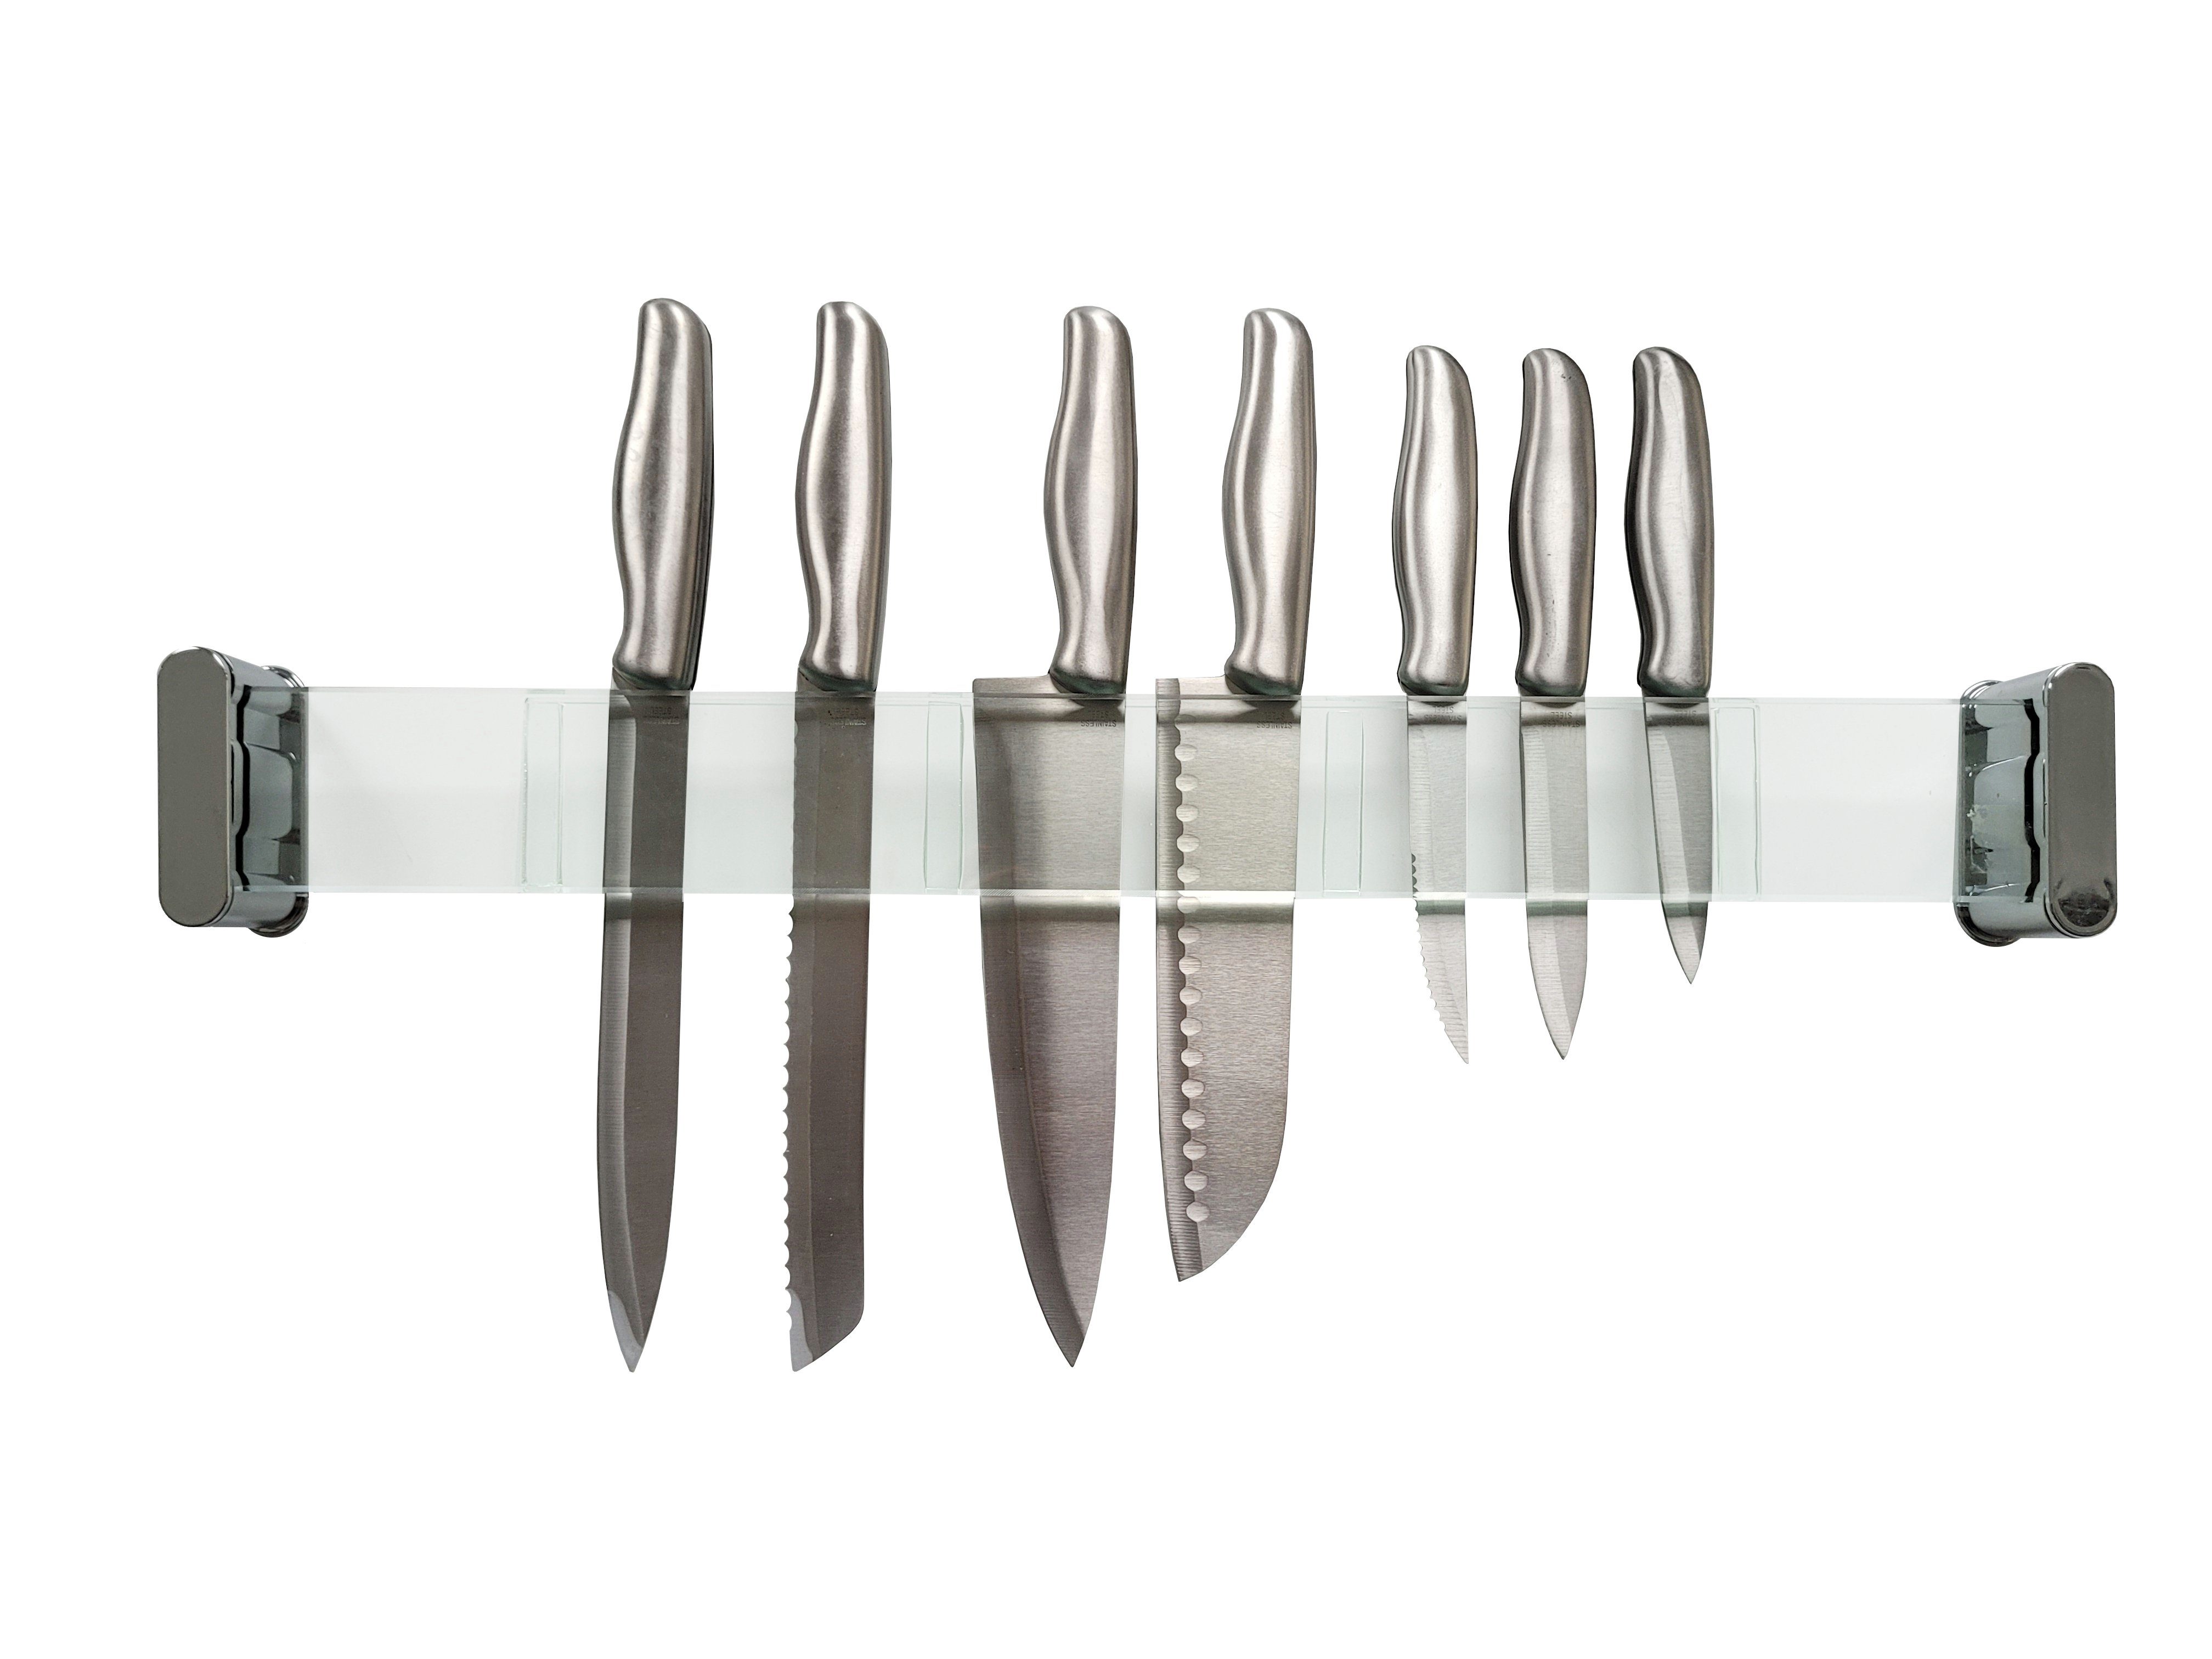 Provance Messerleiste Messerhalter Messerleiste Einschubfächer Glas 56 Länge cm